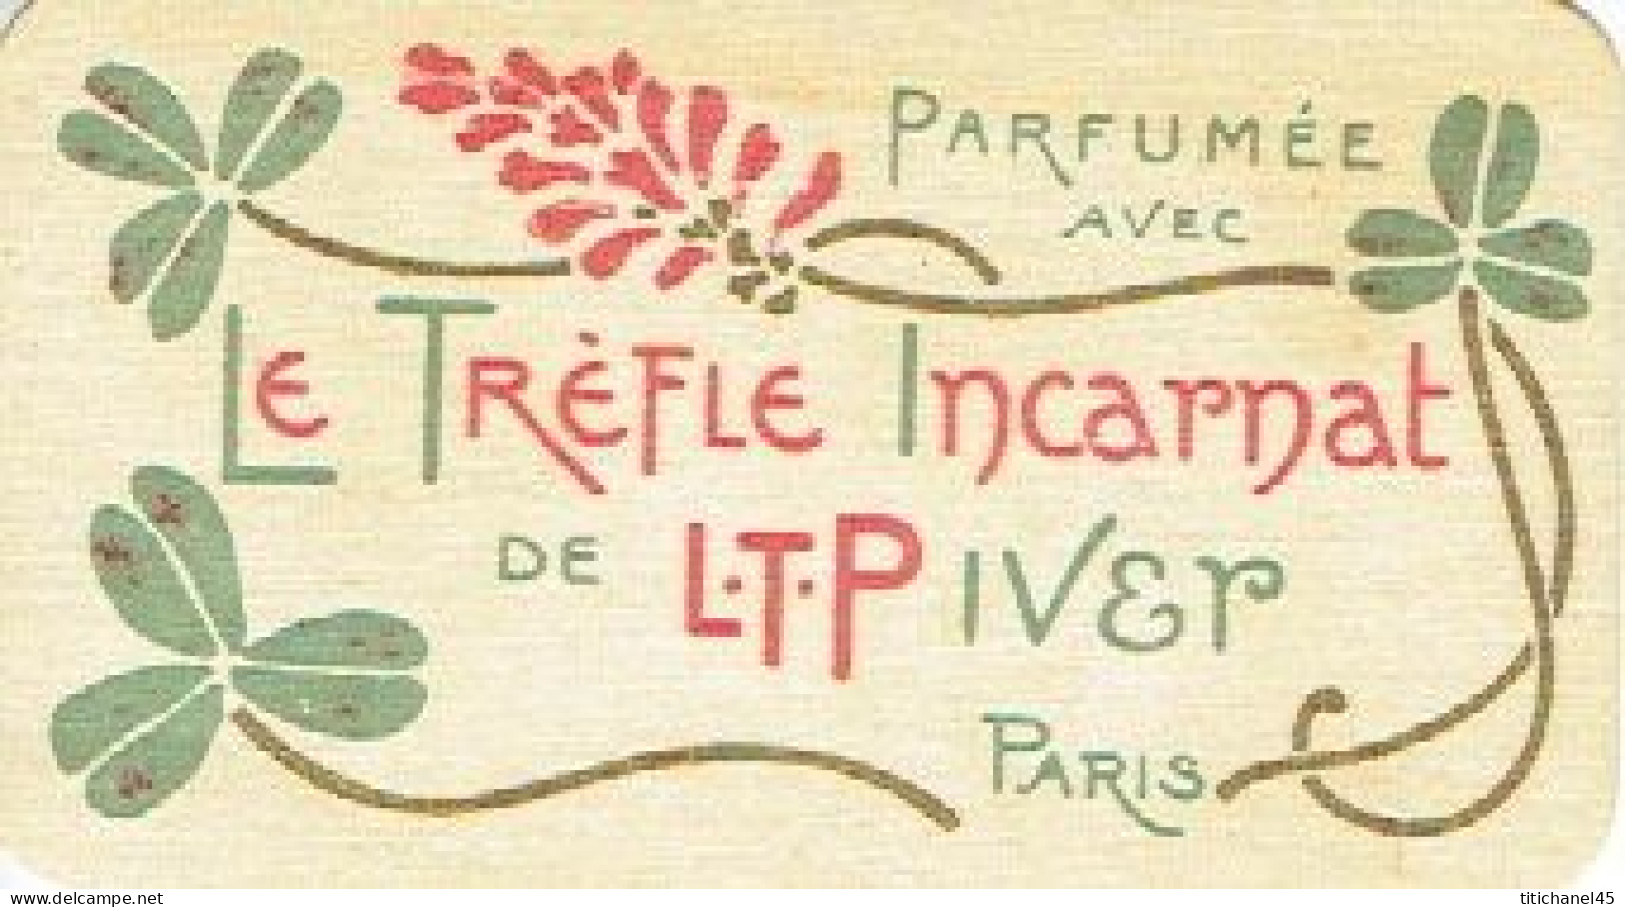 Carte  parfum LE TREFLE INCARNAT de L.T. PIVER - carte offerte par J. MARECHAL articles de luxe à VERVIERS